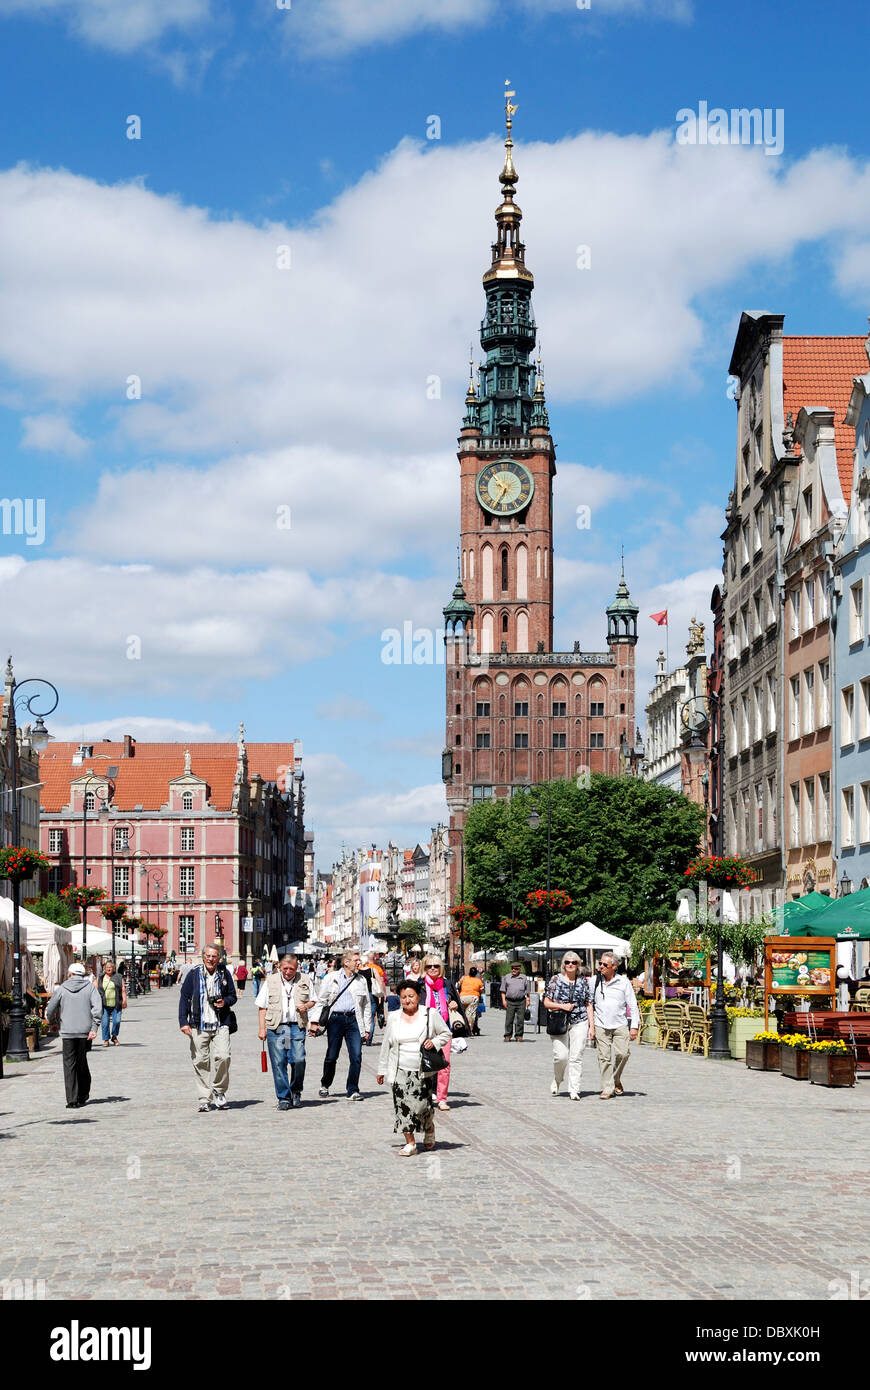 Historique de la vieille ville de Gdansk avec la mairie sur le marché depuis longtemps. Banque D'Images